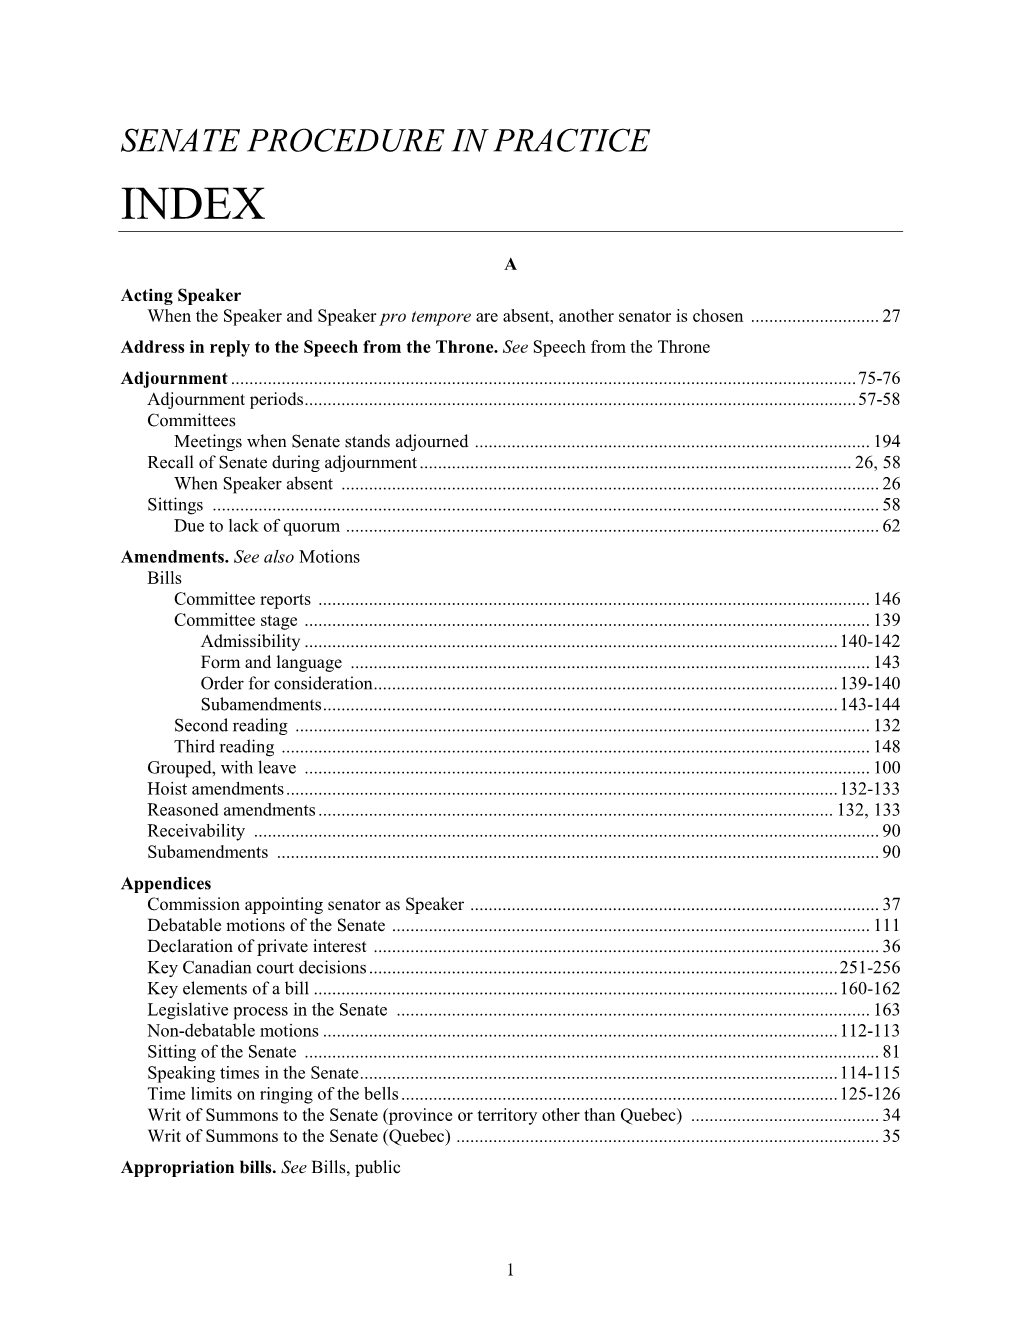 Senate Procedure in Practice Index